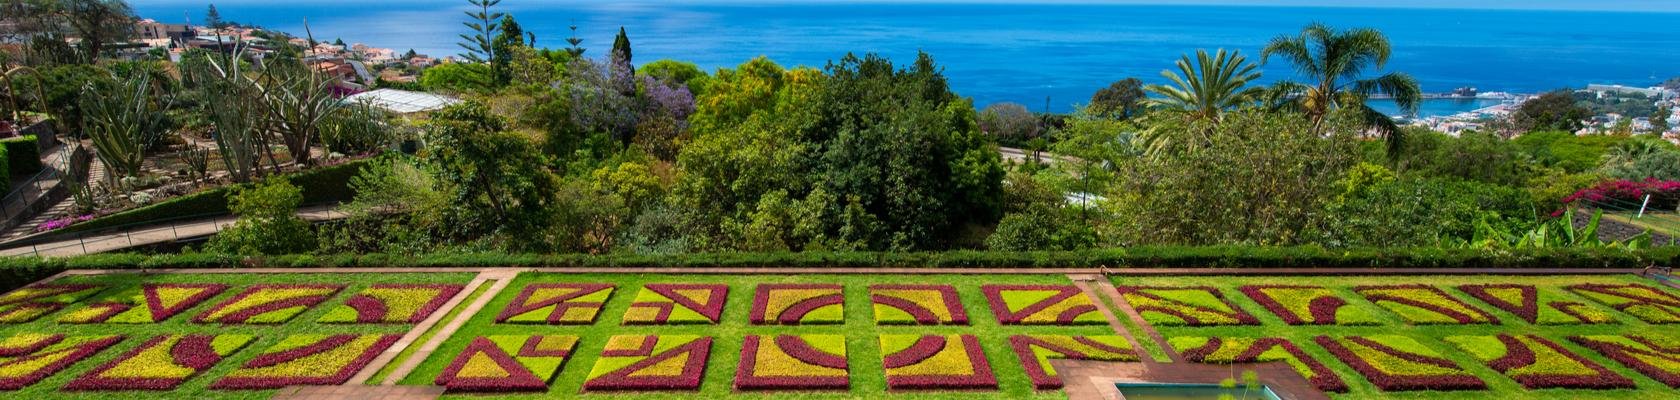 De kleurrijke Madeira Botanical Gardens